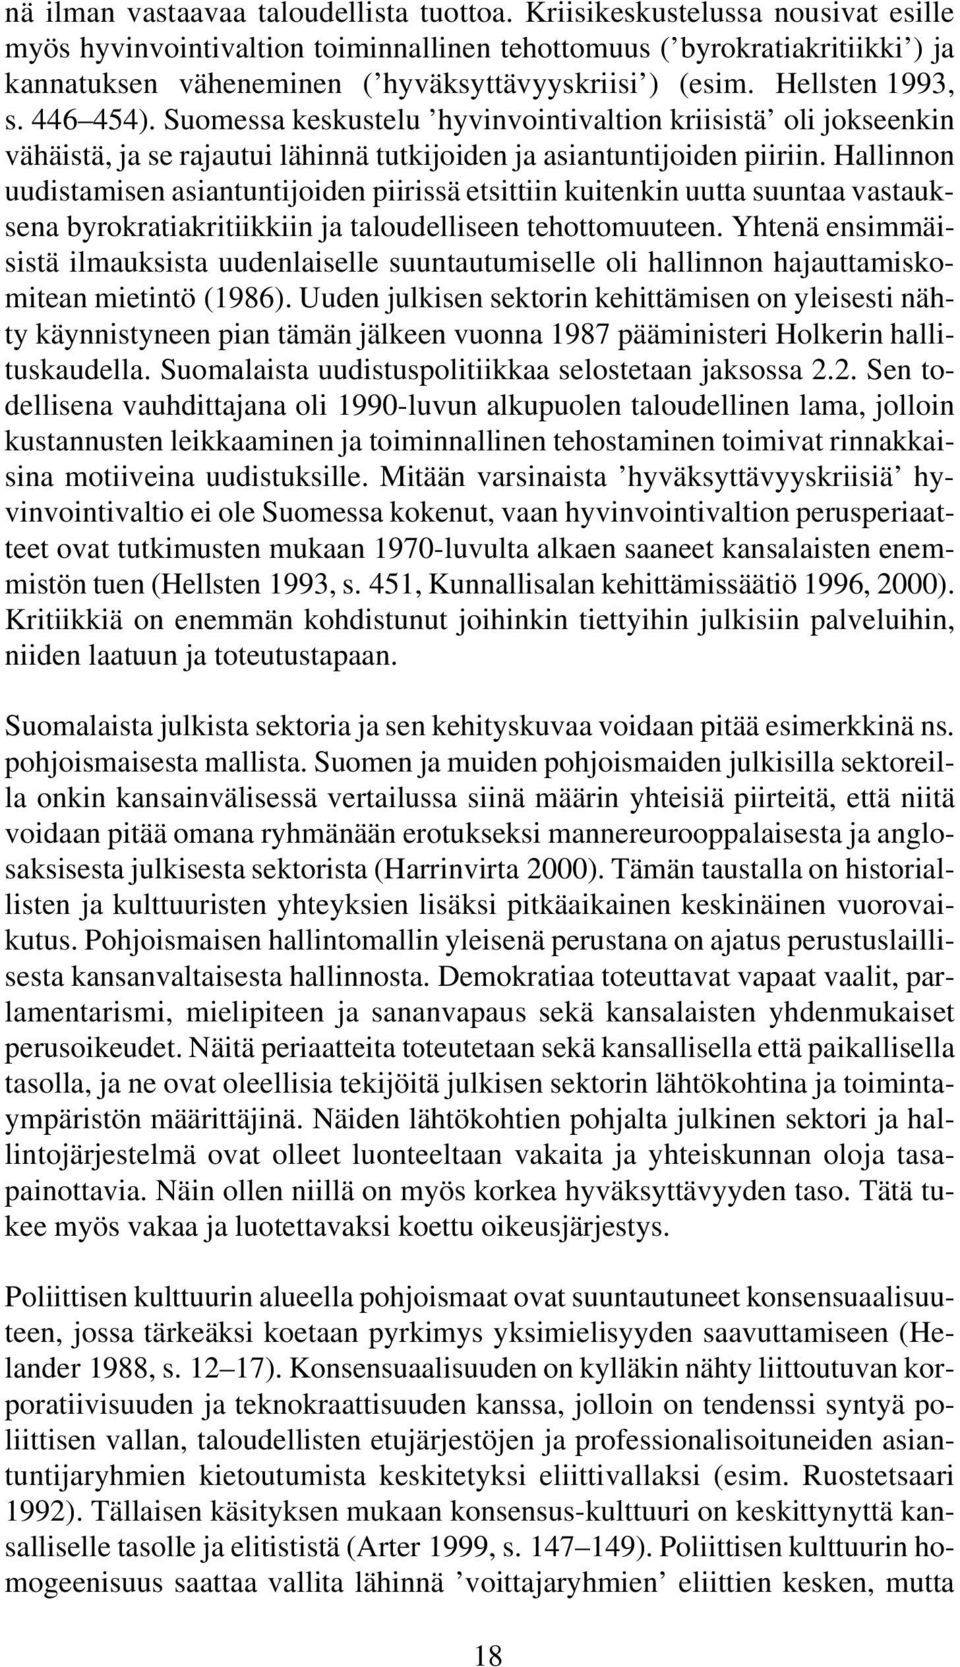 Suomessa keskustelu hyvinvointivaltion kriisistä oli jokseenkin vähäistä, ja se rajautui lähinnä tutkijoiden ja asiantuntijoiden piiriin.